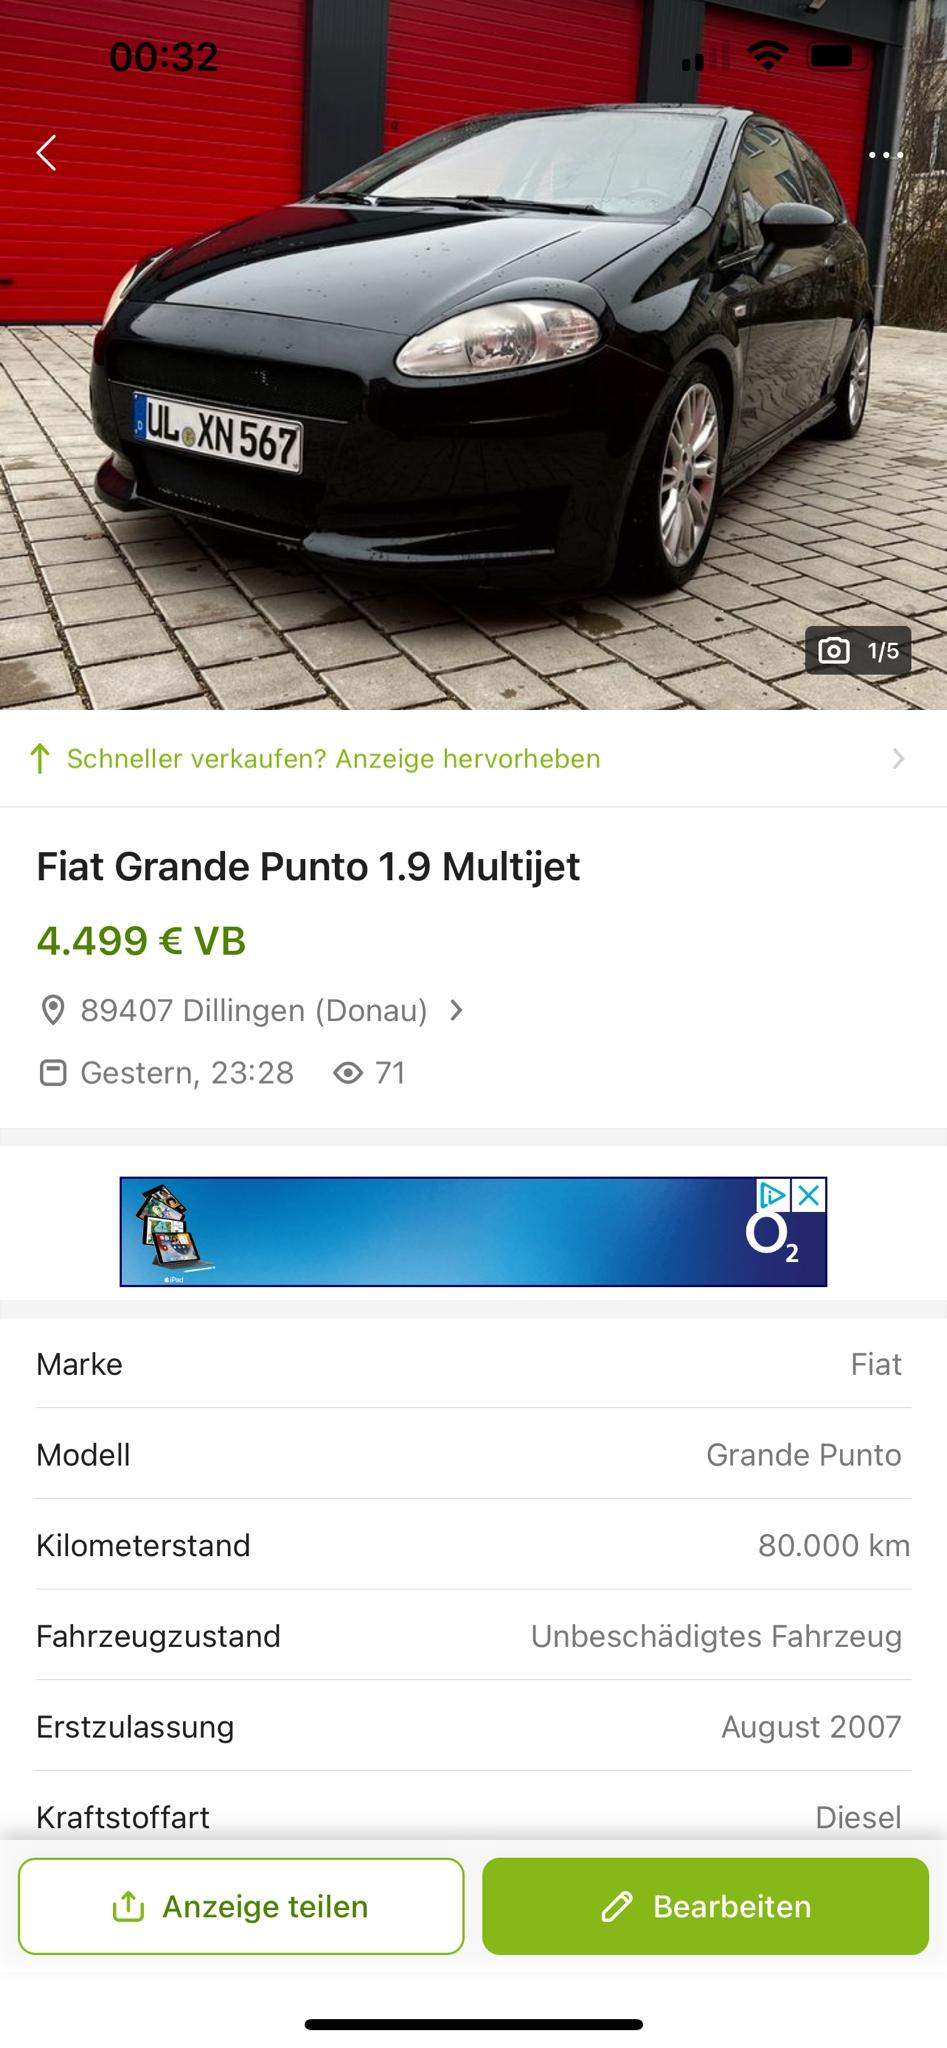 Fiat Grande Punto 1.9 Multijet? (Autokauf, Gebrauchtwagen)